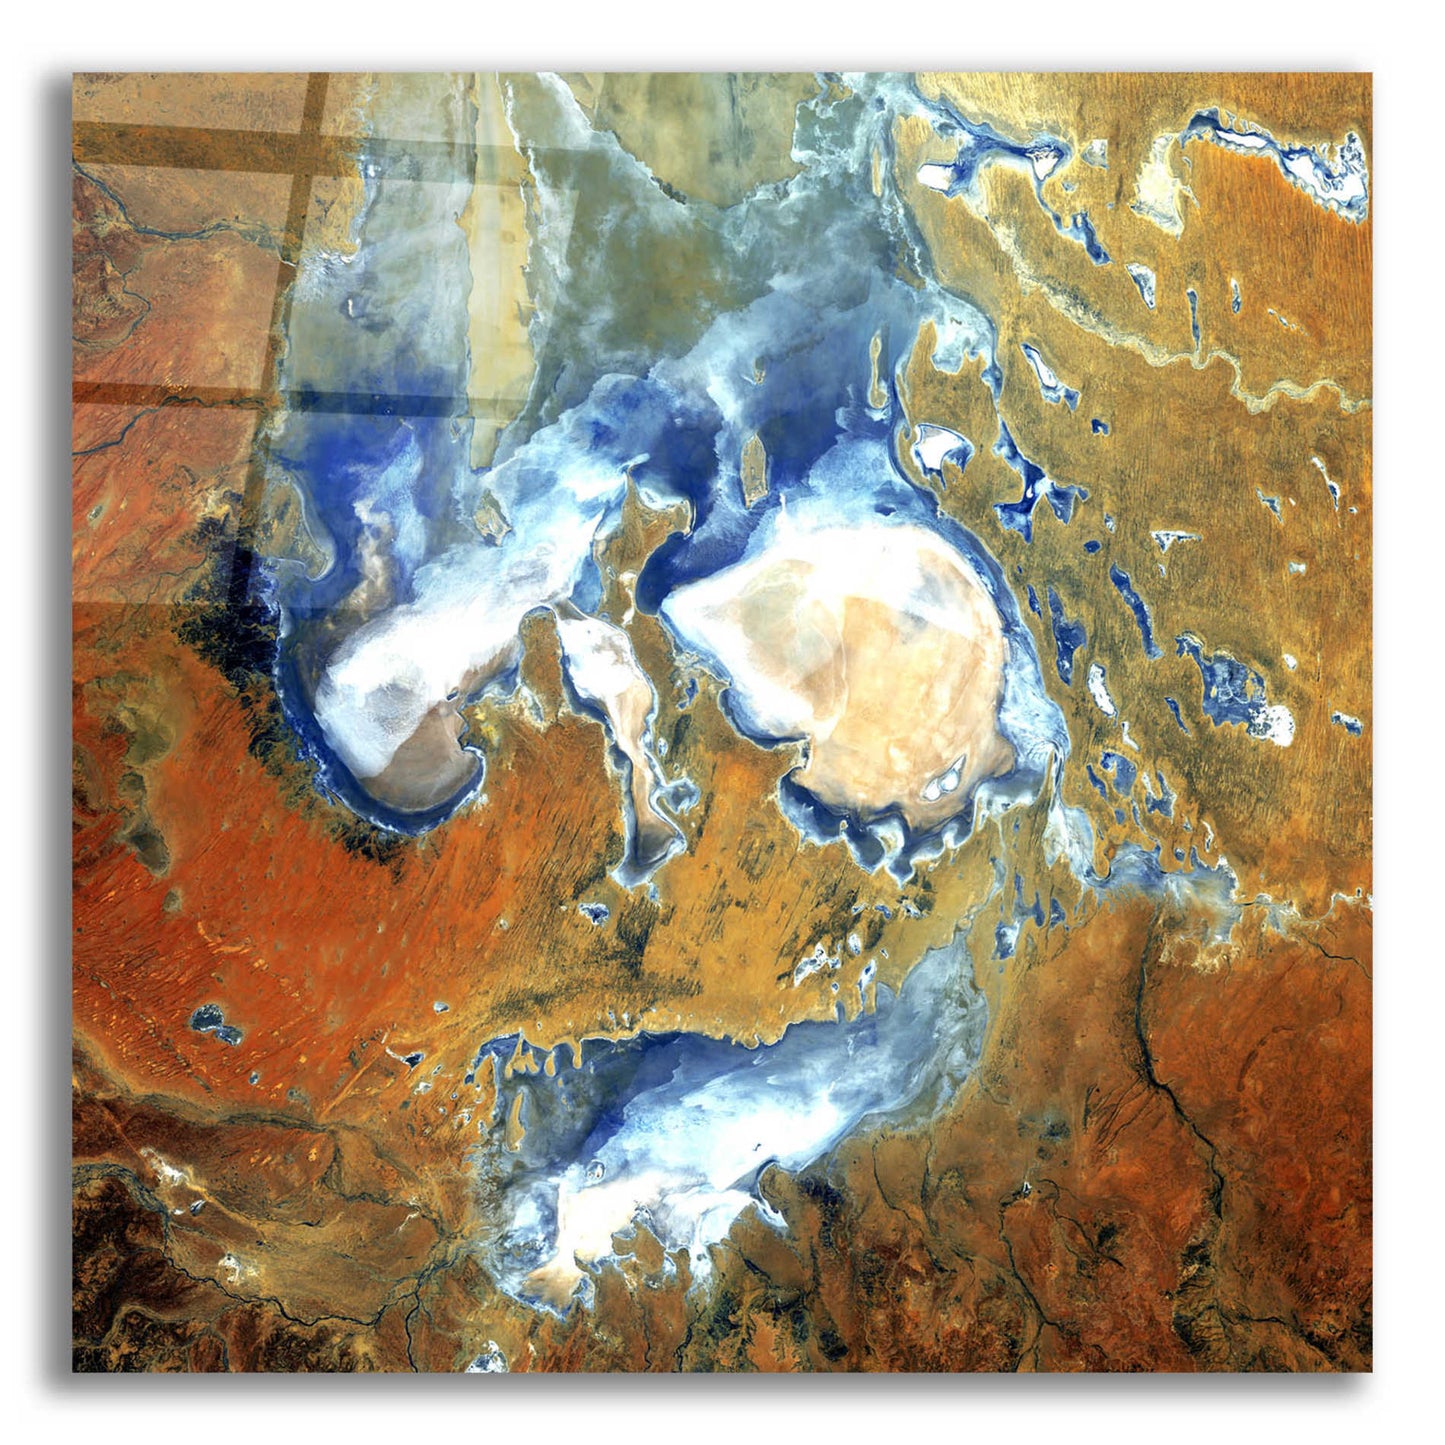 Epic Art 'Earth as Art: Lake Eyre,' Acrylic Glass Wall Art,12x12x1.1x0,18x18x1.1x0,26x26x1.74x0,37x37x1.74x0